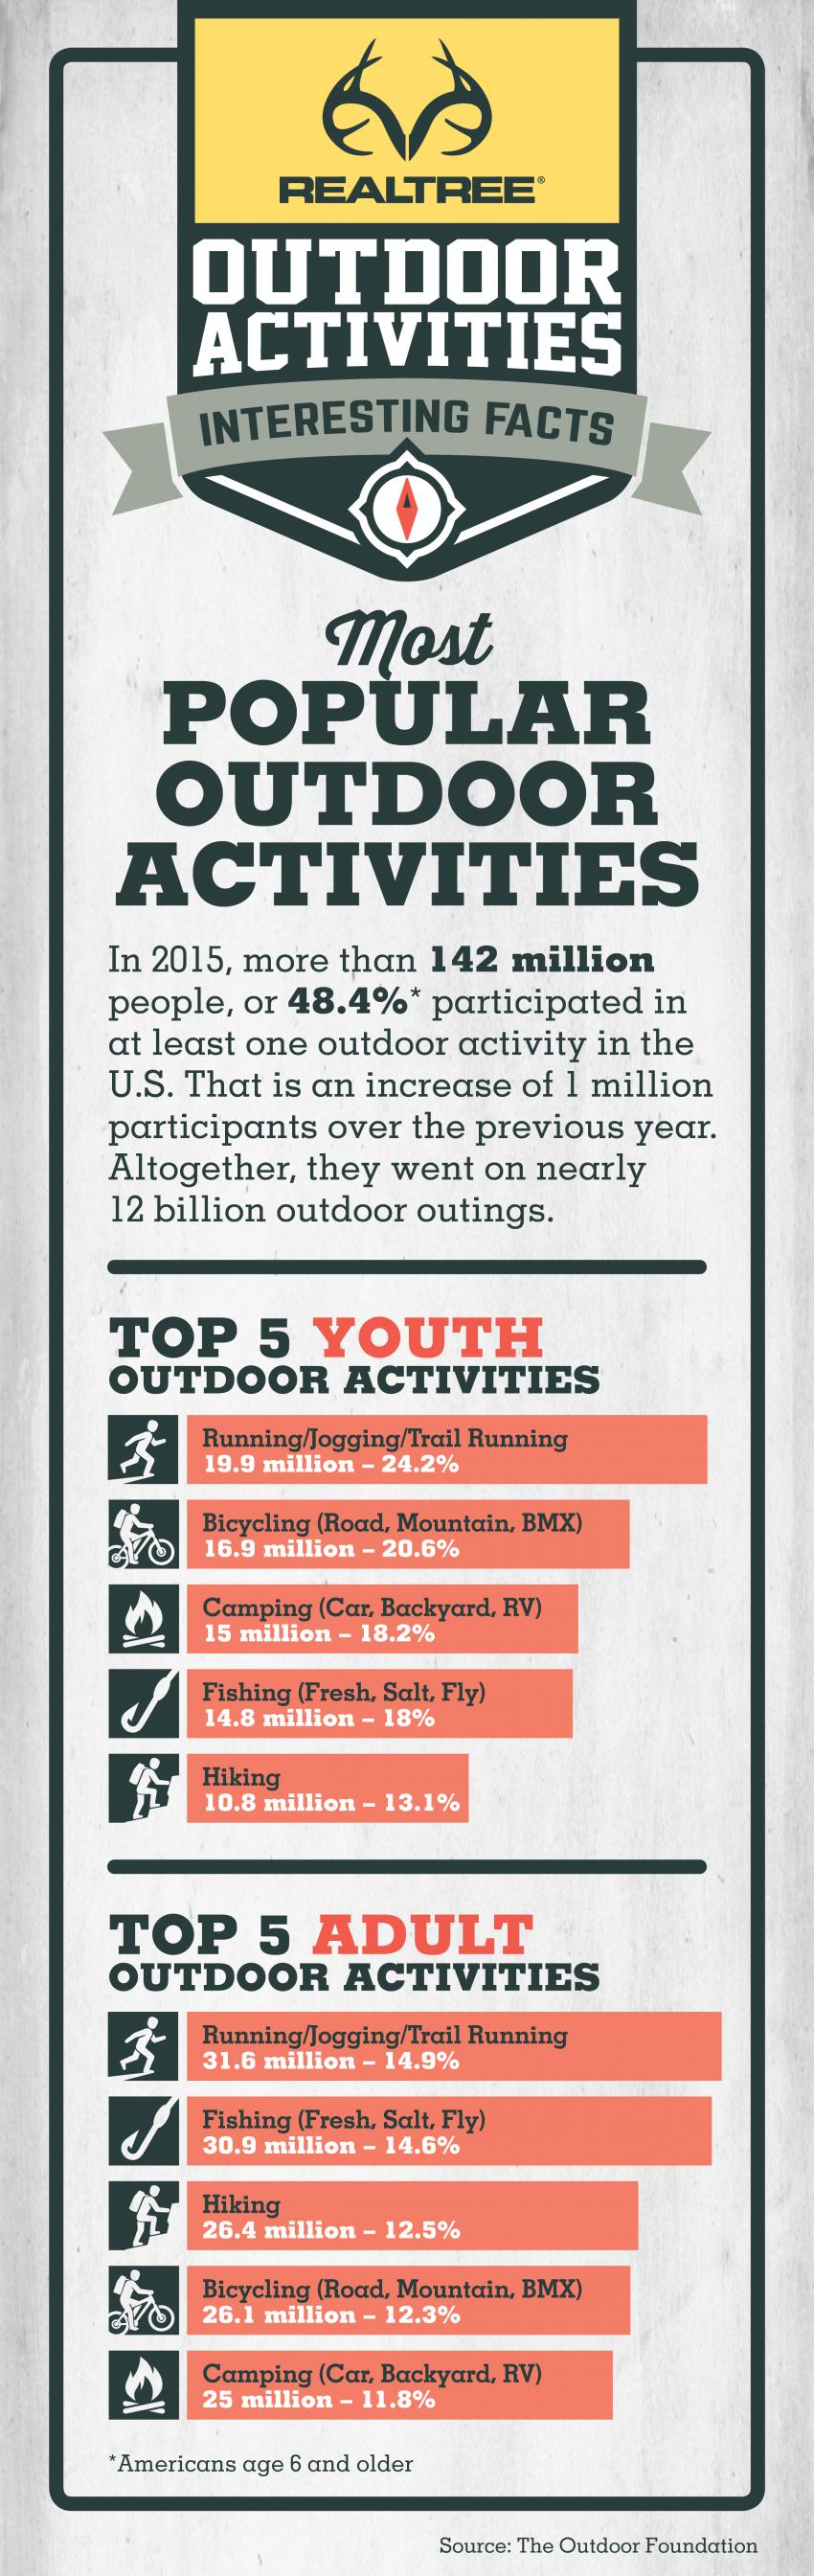 Top outdoor Activities Infographic 2016 | Realtree B2B 